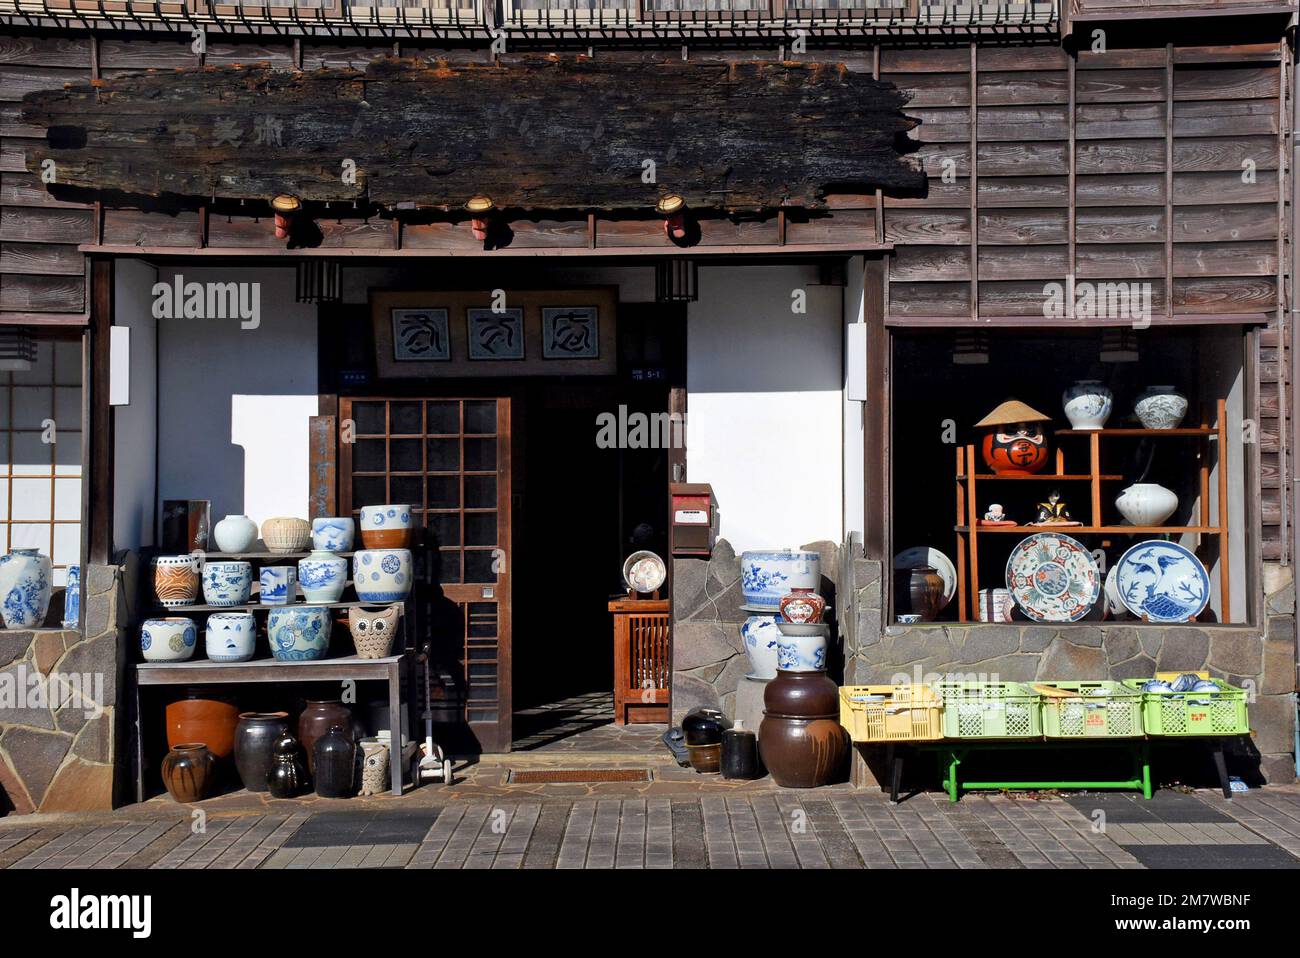 Entrée à un studio de poterie et boutique japonais de cuisine traditionnelle dans la ville d'Arita sur l'île de Kyushu. Pièces en porcelaine colorée de style Imari Banque D'Images